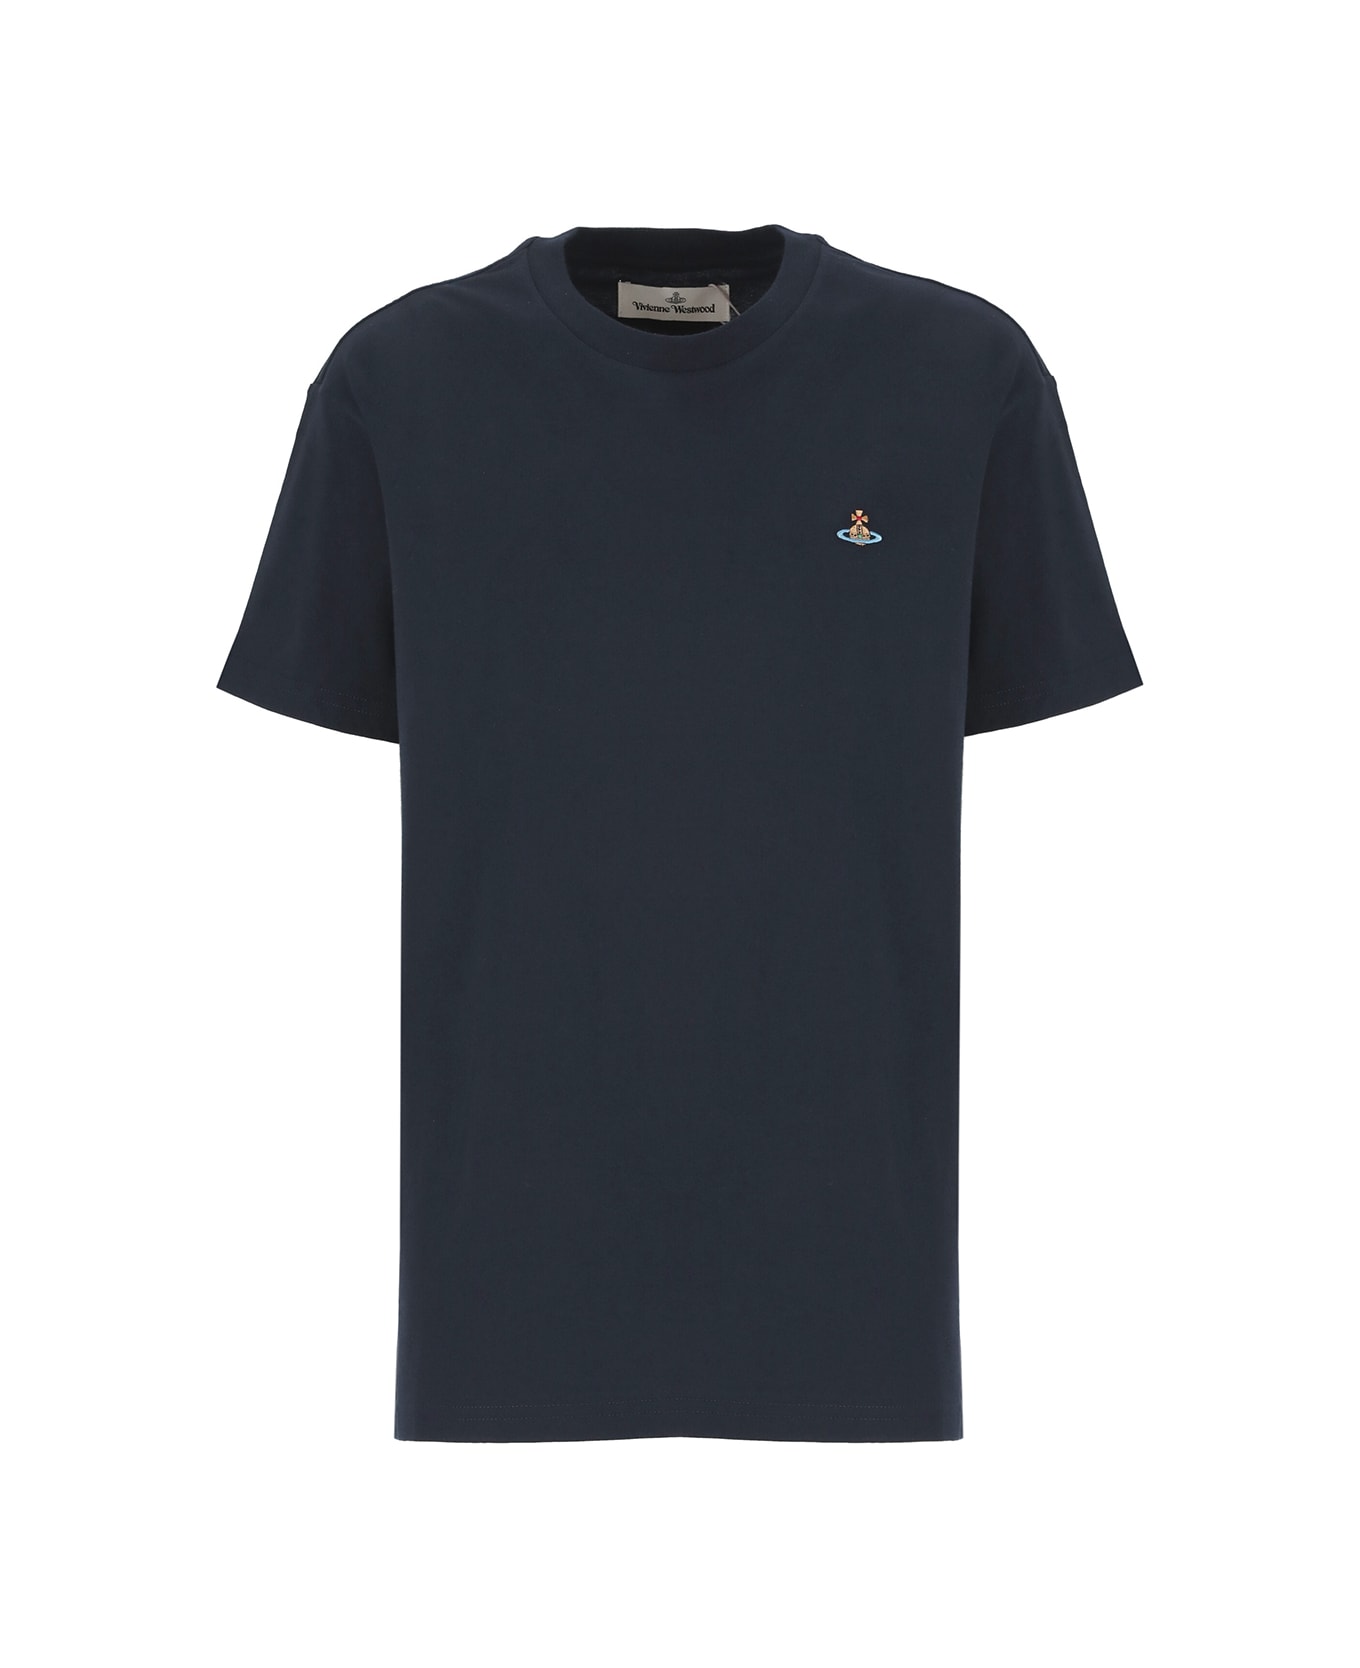 Vivienne Westwood Classic Orb T-shirt - Blue Tシャツ